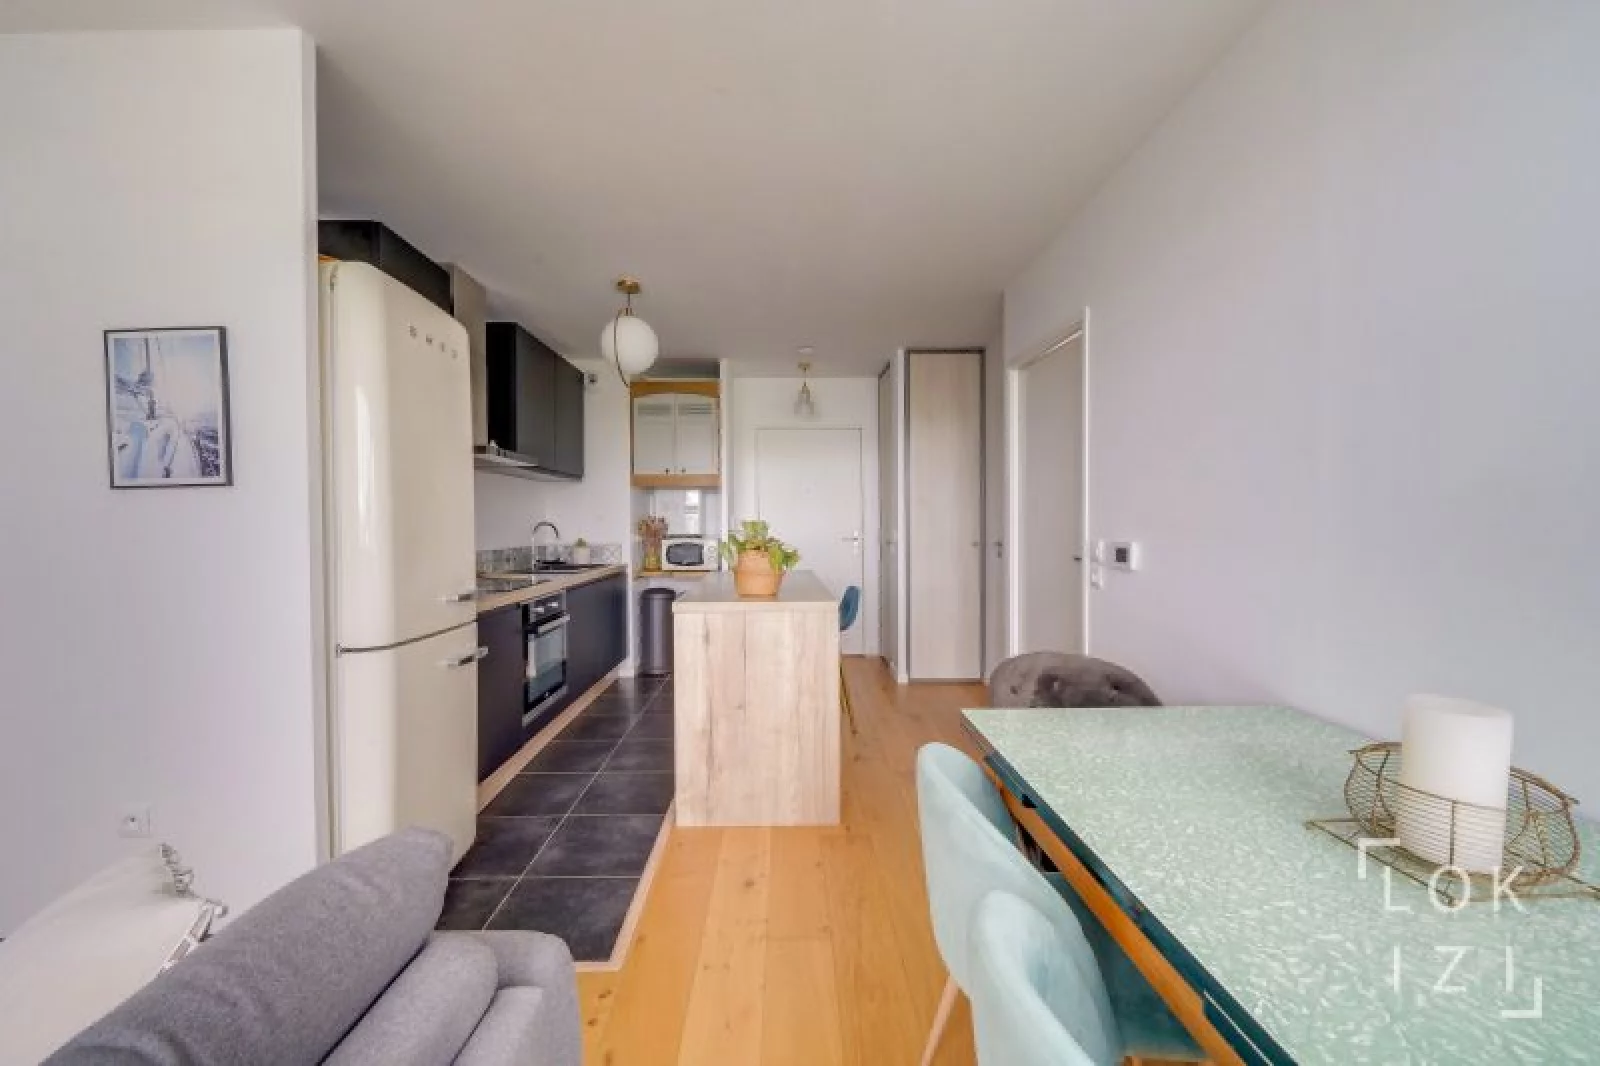 Location appartement meublé 2 pièces 40m² (Bordeaux - Floirac)